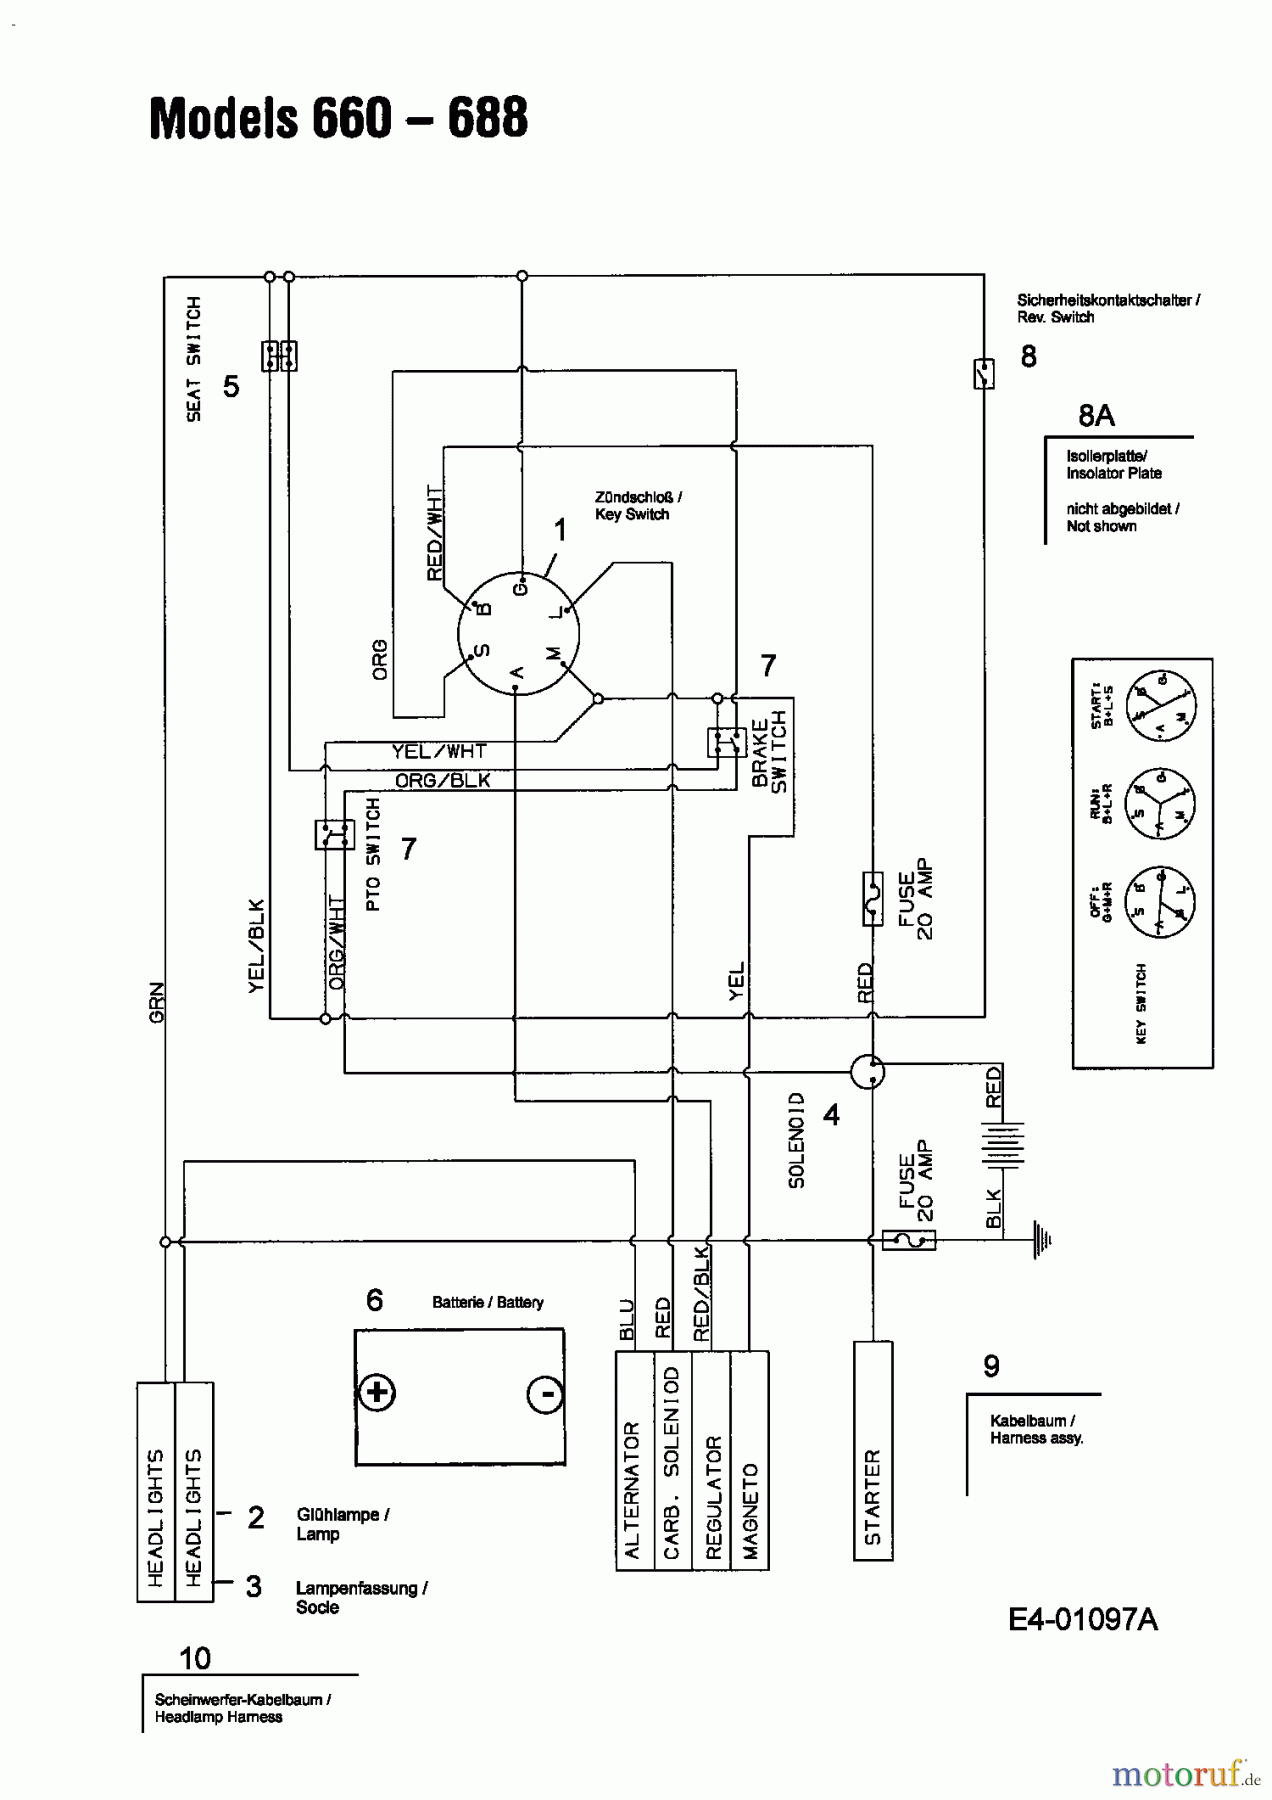  MTD Lawn tractors B 135 13BA668F678  (2004) Wiring diagram